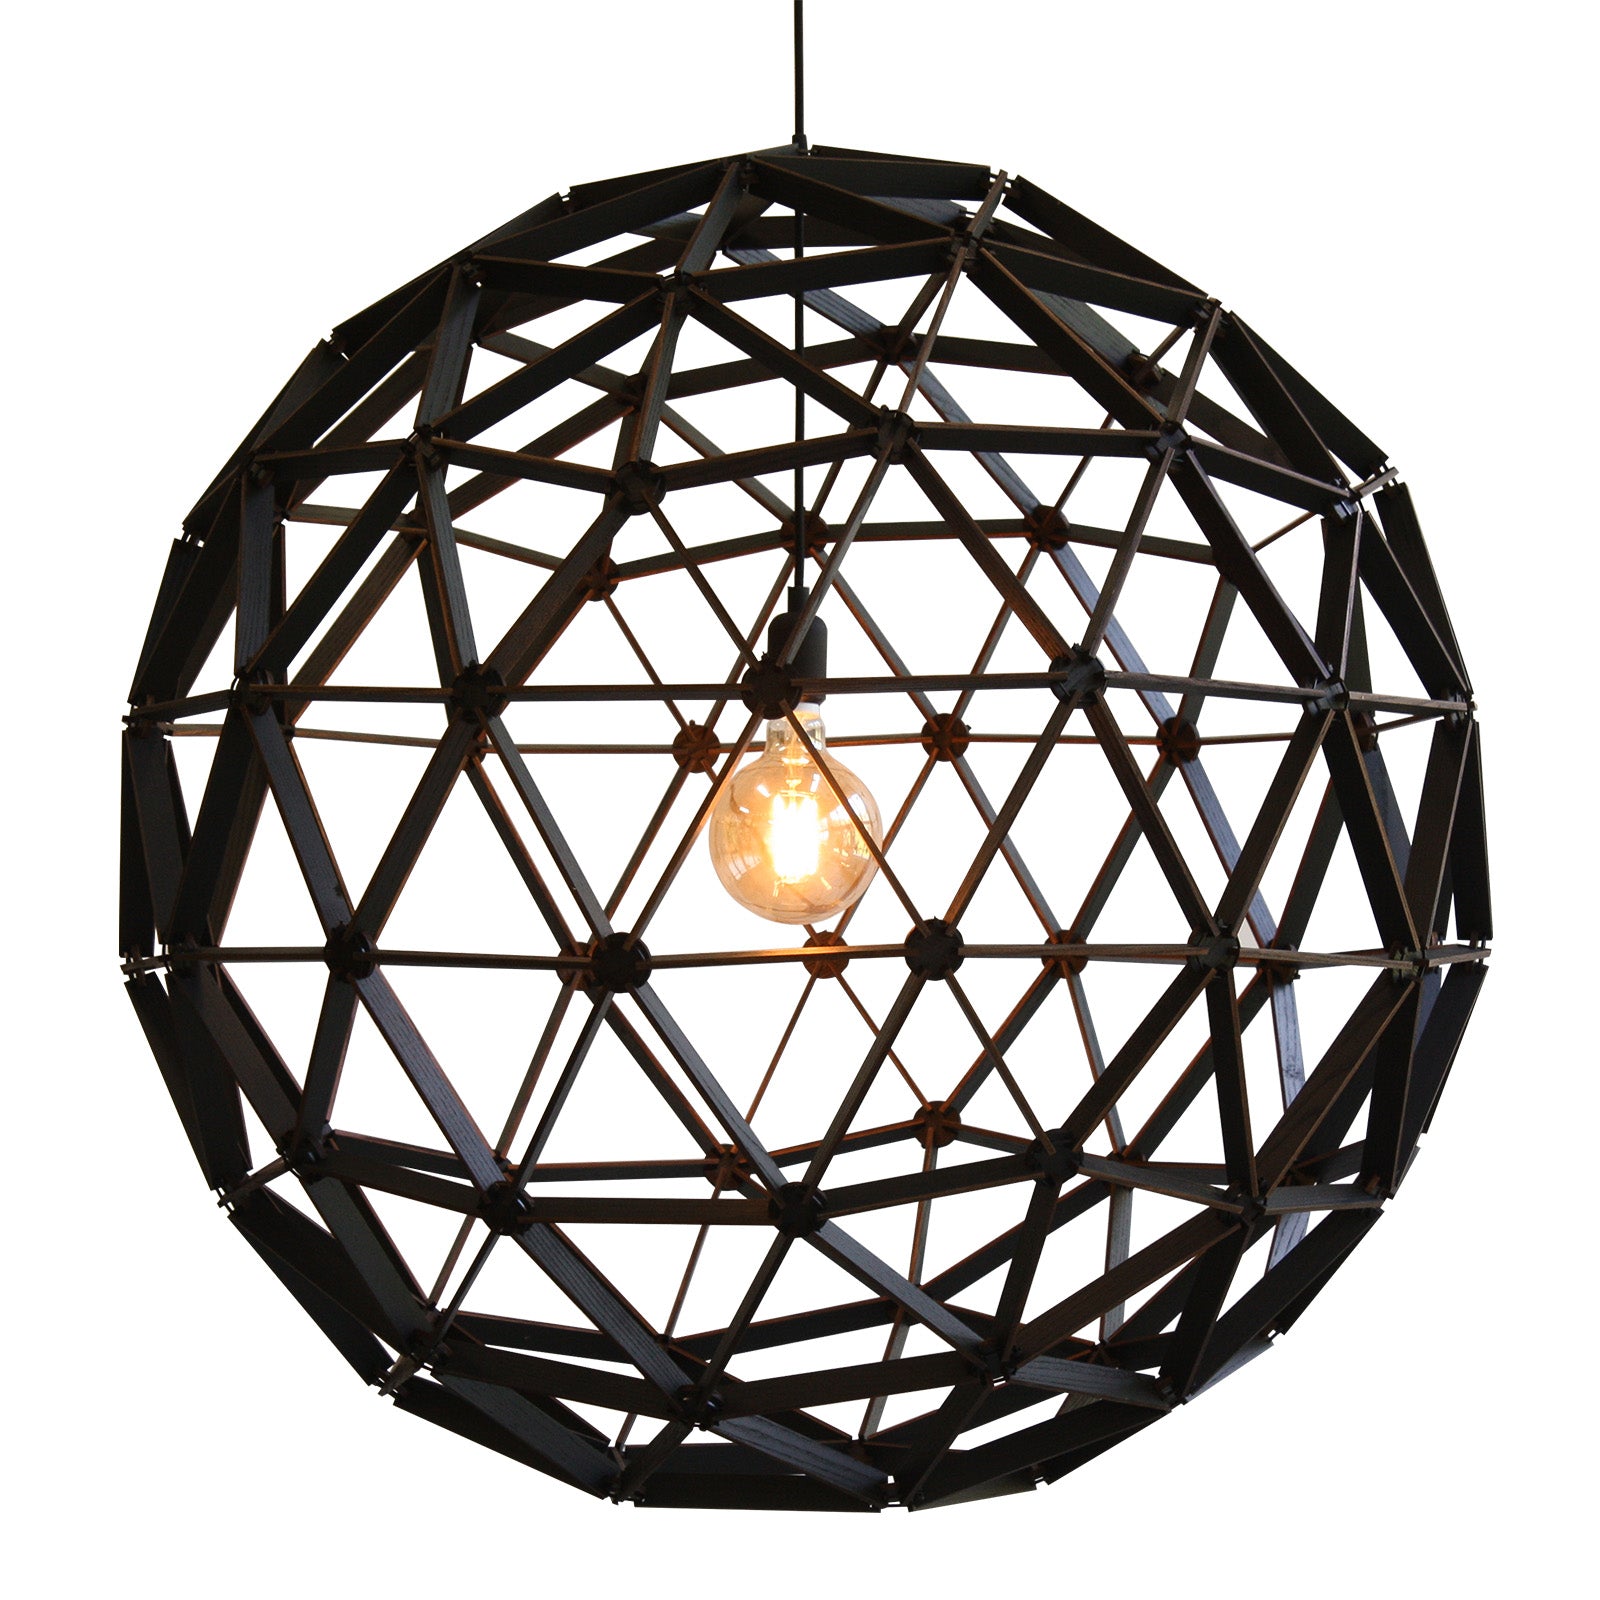 Bollelamp binthout hanglamp zwart hout duurzaam design